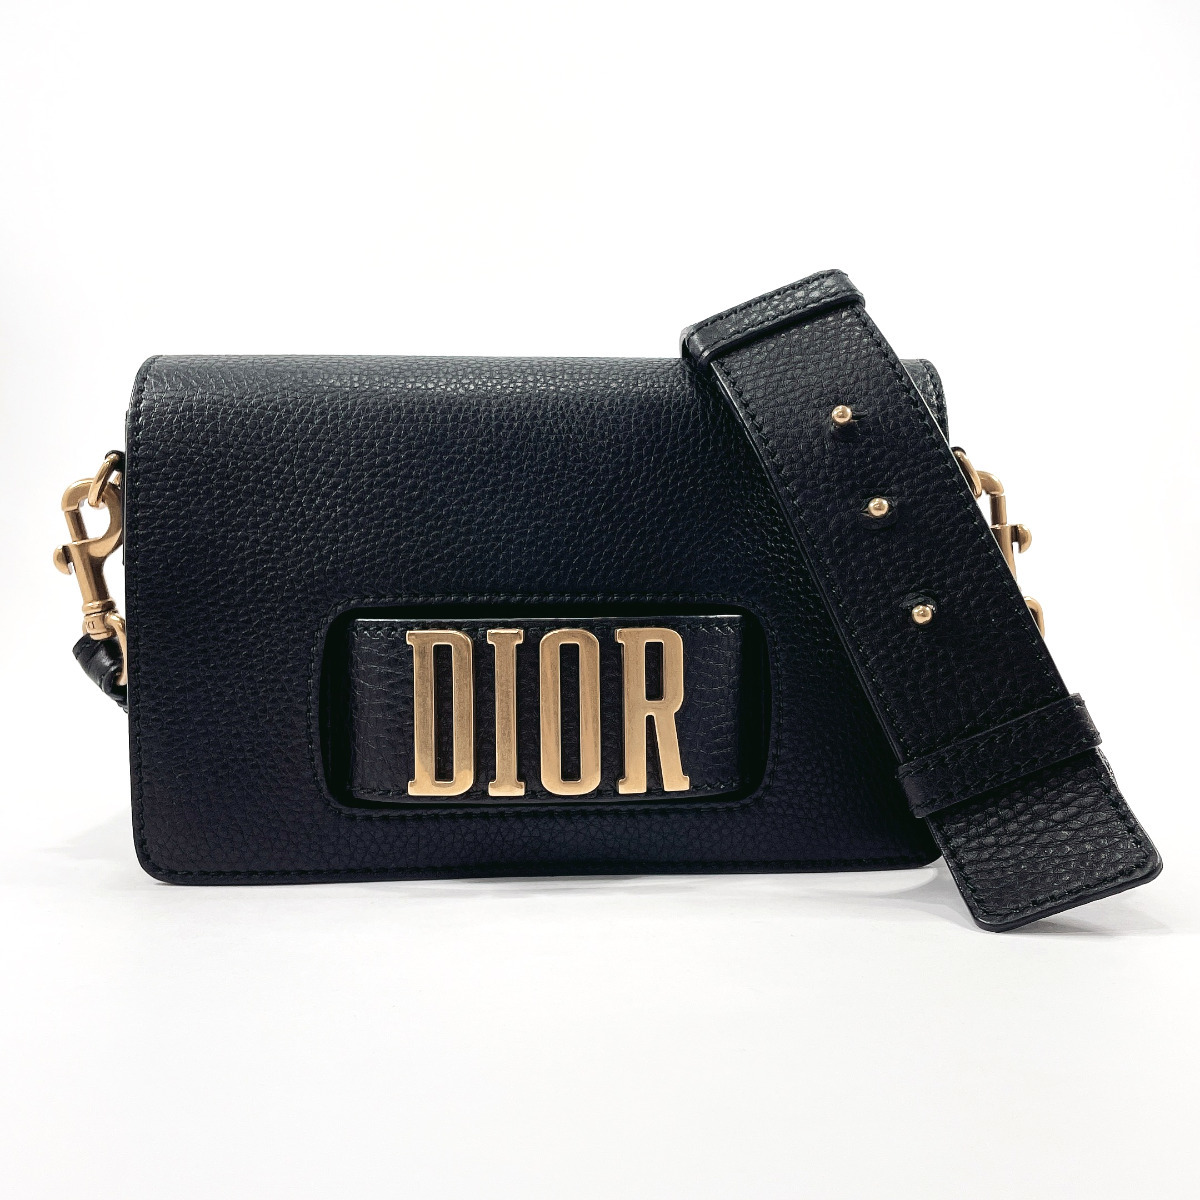 ディオール Dior ショルダーバッグ 斜め掛け フラップバッグ M8000CRSB エボリューション レザー ブラック/ゴールド金具